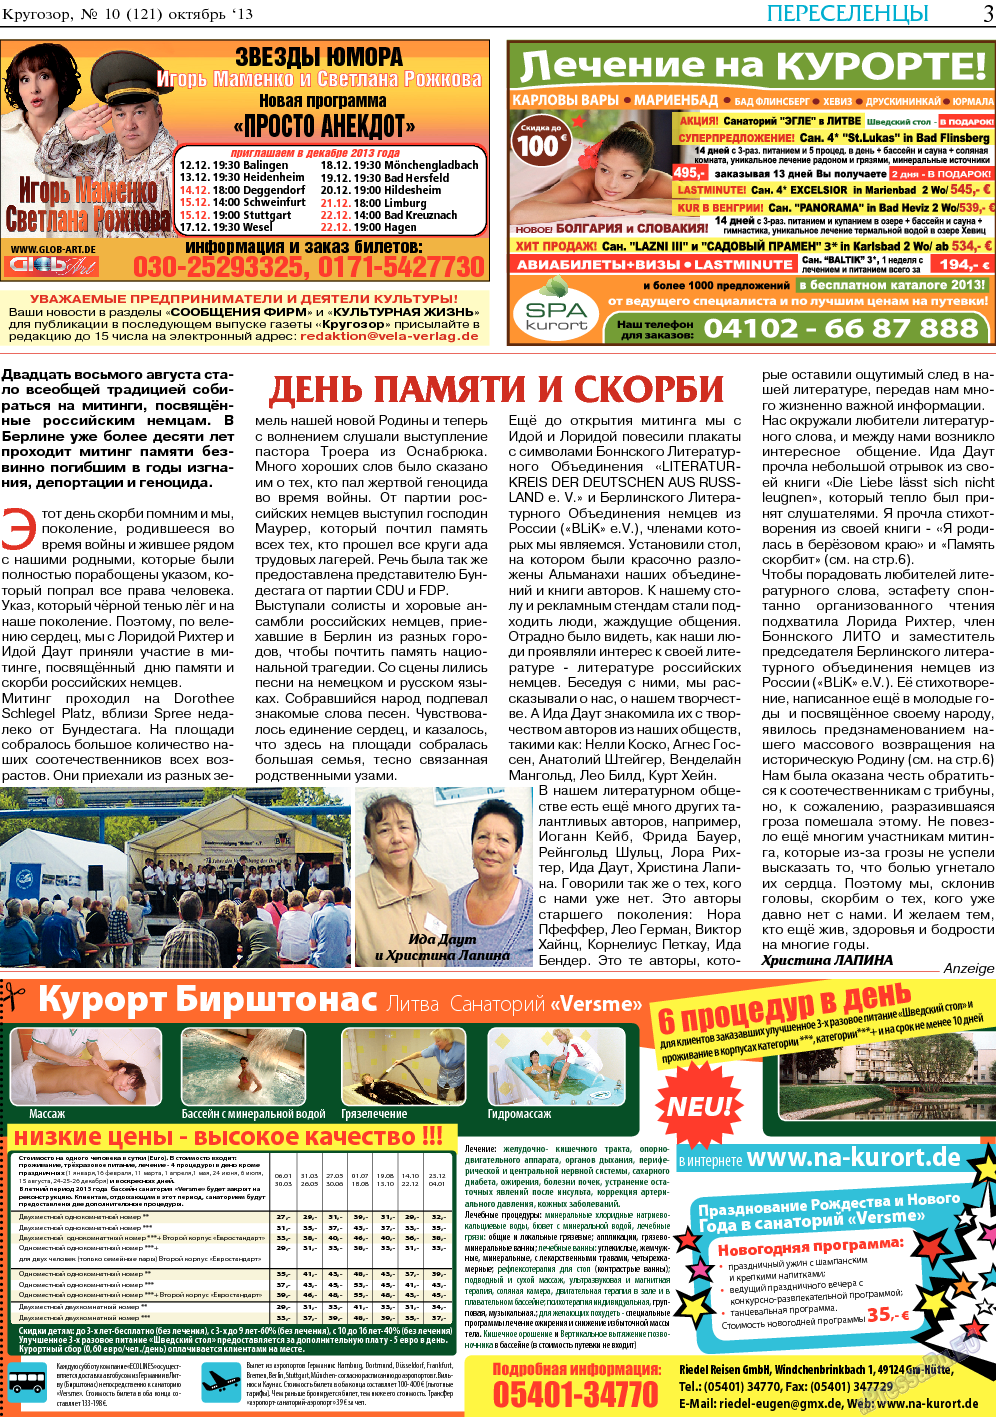 Кругозор, газета. 2013 №10 стр.3